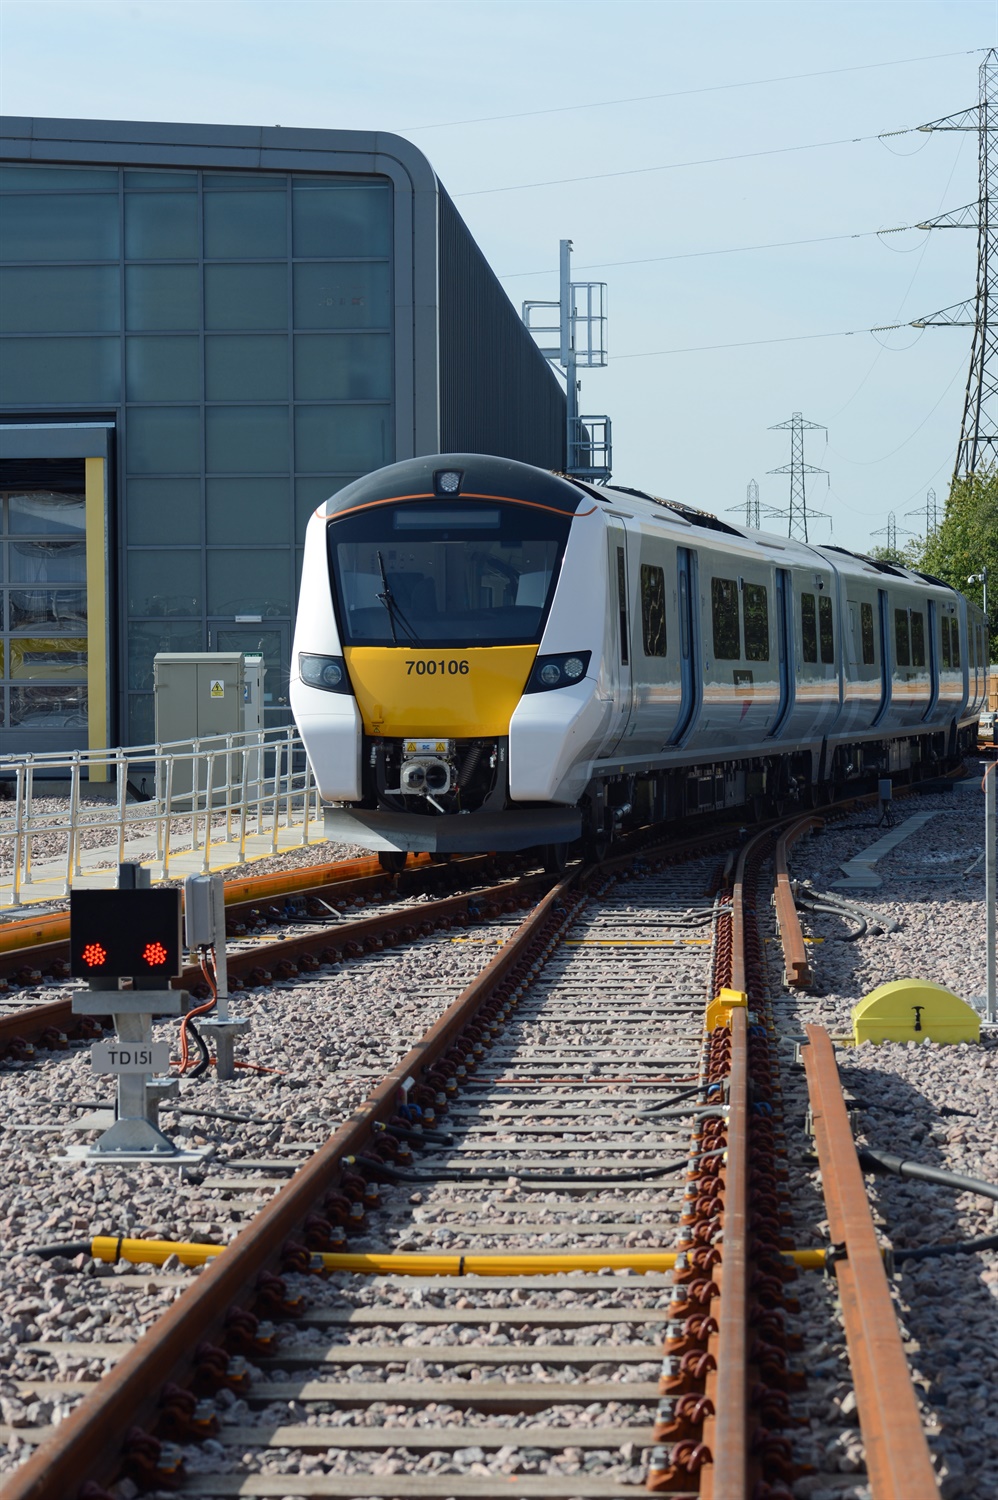 Siemens-built-Class-700-Desiro-City-in-sidings-at-Three-Bridges-depot-UK